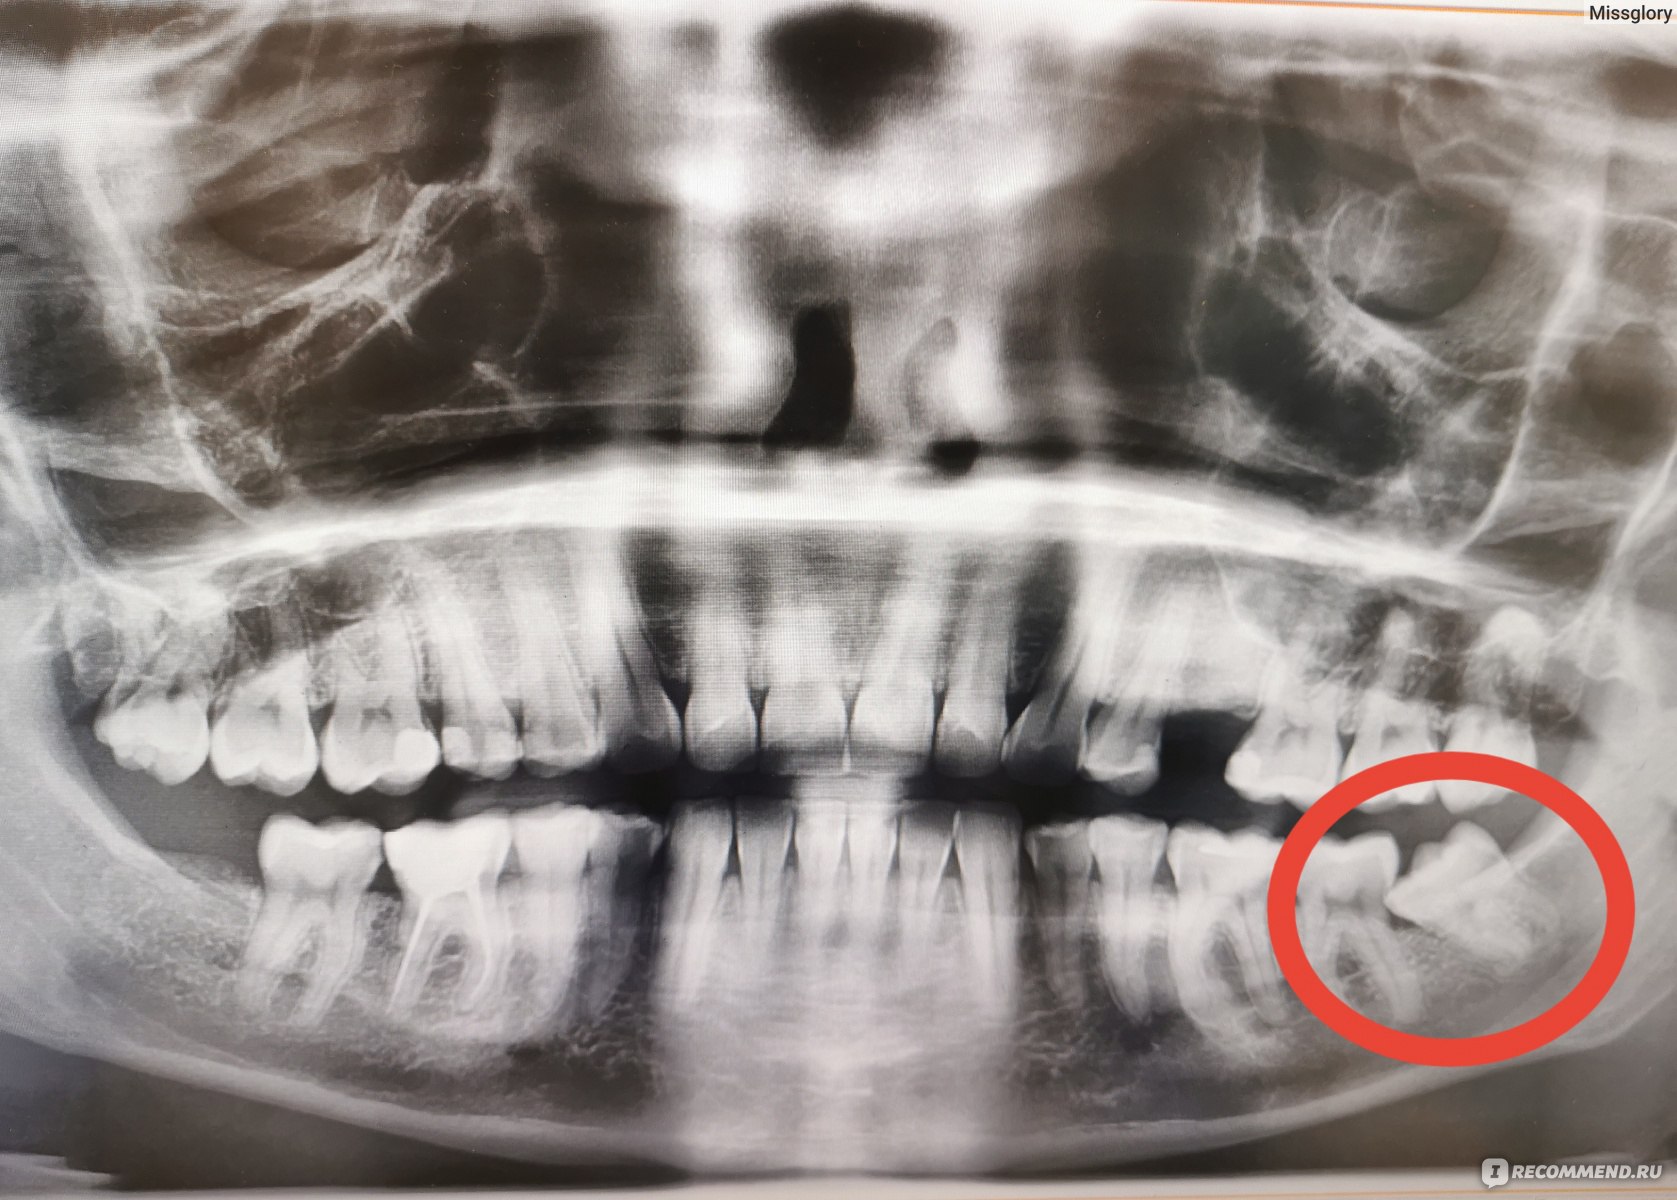 Осложнения после удаления зубов. Какие бывают и почему возникают?